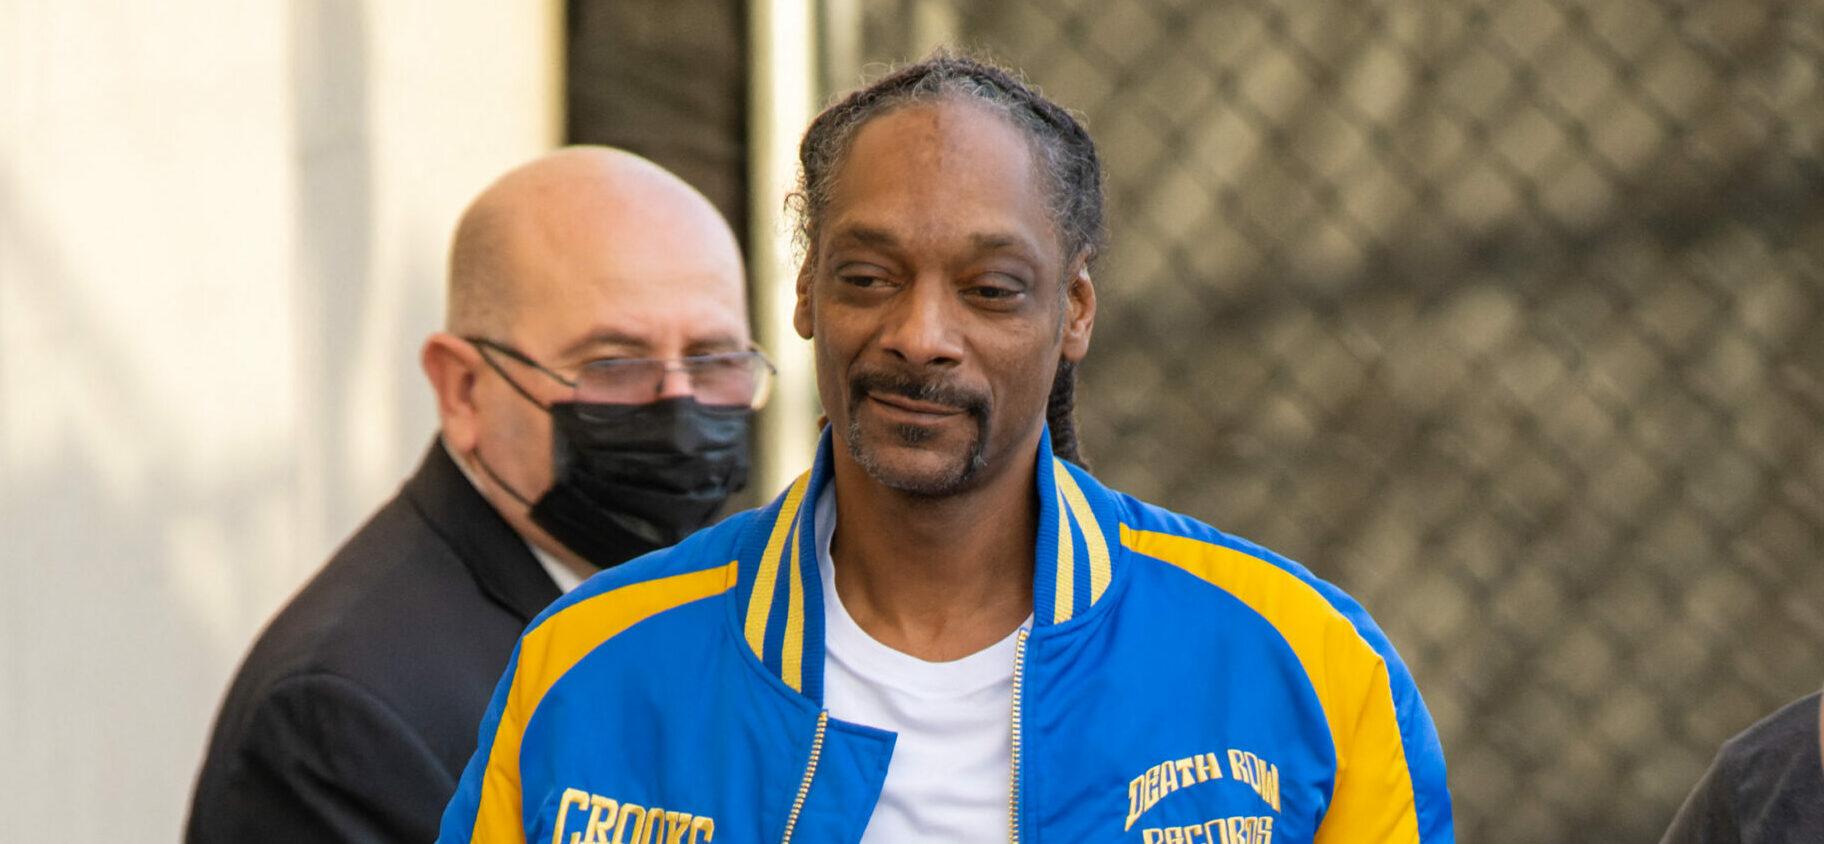 Snoop Dogg at Kimmel